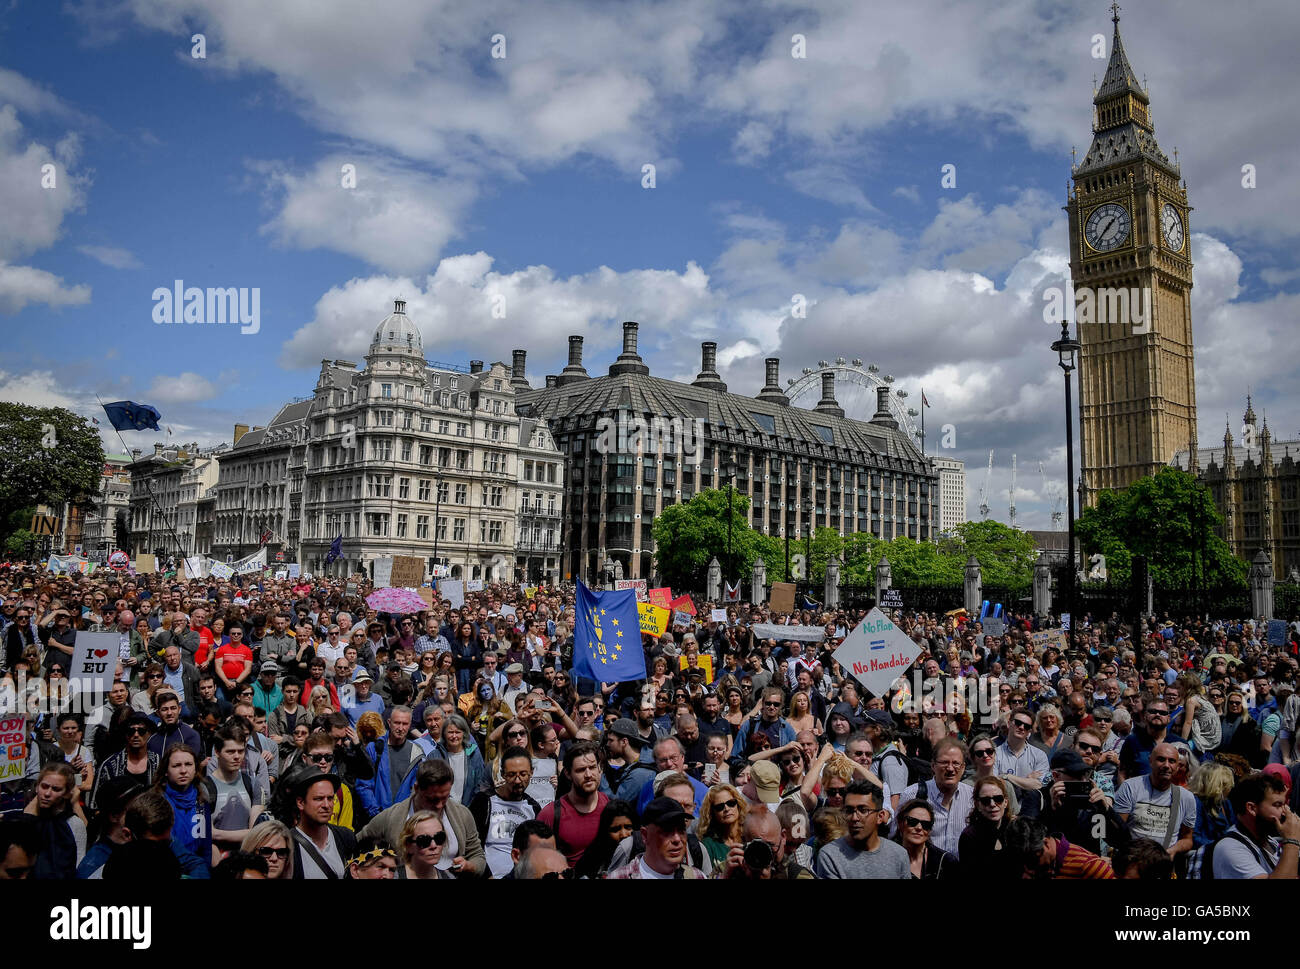 Londres, Royaume-Uni. 3 juillet, 2016. Les gens prennent part à une marche contre l'issue du récent référendum de l'Union européenne, à Londres, en Grande-Bretagne, le 2 juillet 2016. Autour de 40 000 personnes ont assisté à l'anti-Brexit mars après une pétition de 4 million de signatures a été soumis au parlement, en faveur d'un second référendum. Source : Xinhua/Alamy Live News Banque D'Images